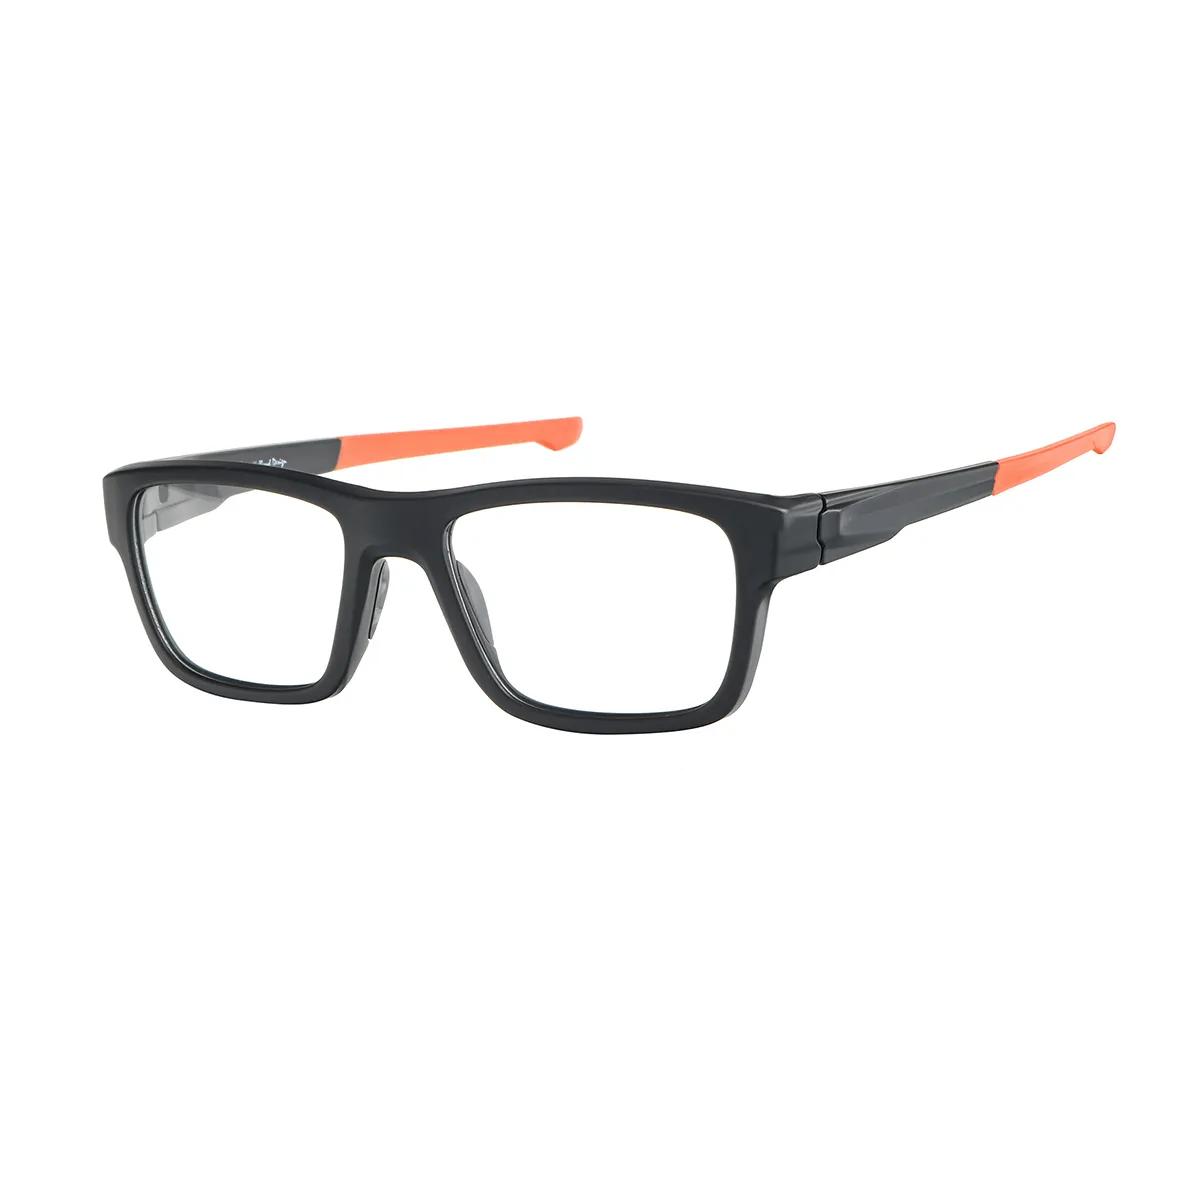 Hawthorne - Rectangle Black-Orange Glasses for Men